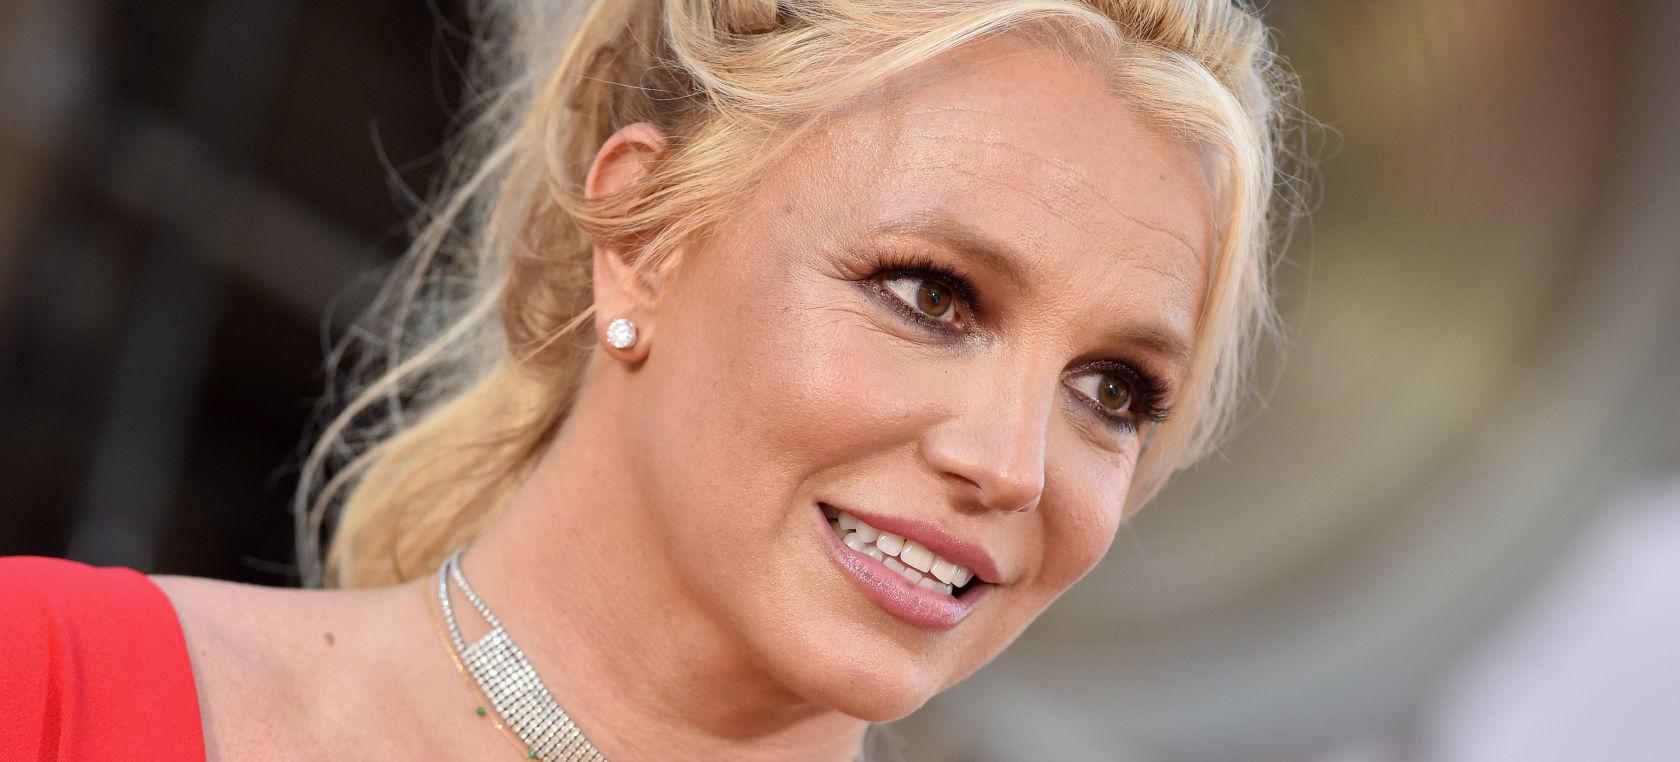 El mensaje de indignación de Britney Spears contra Estados Unidos y los documentales de su vida